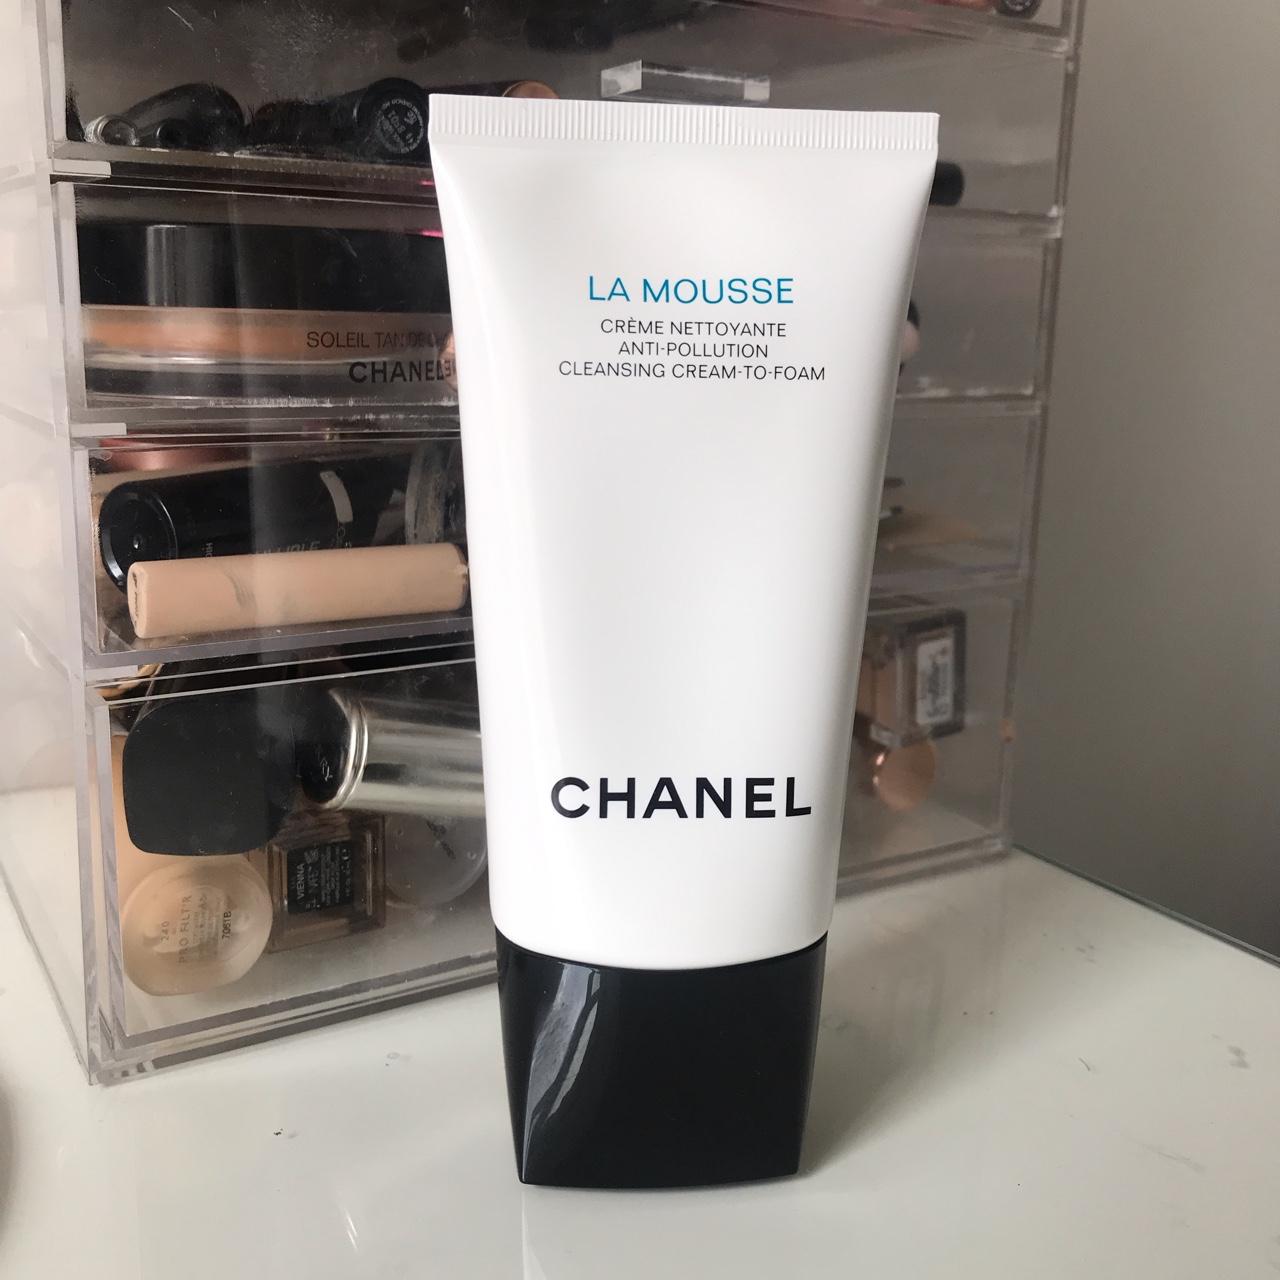 Chanel La Mousse cleanser. Anti pollution 